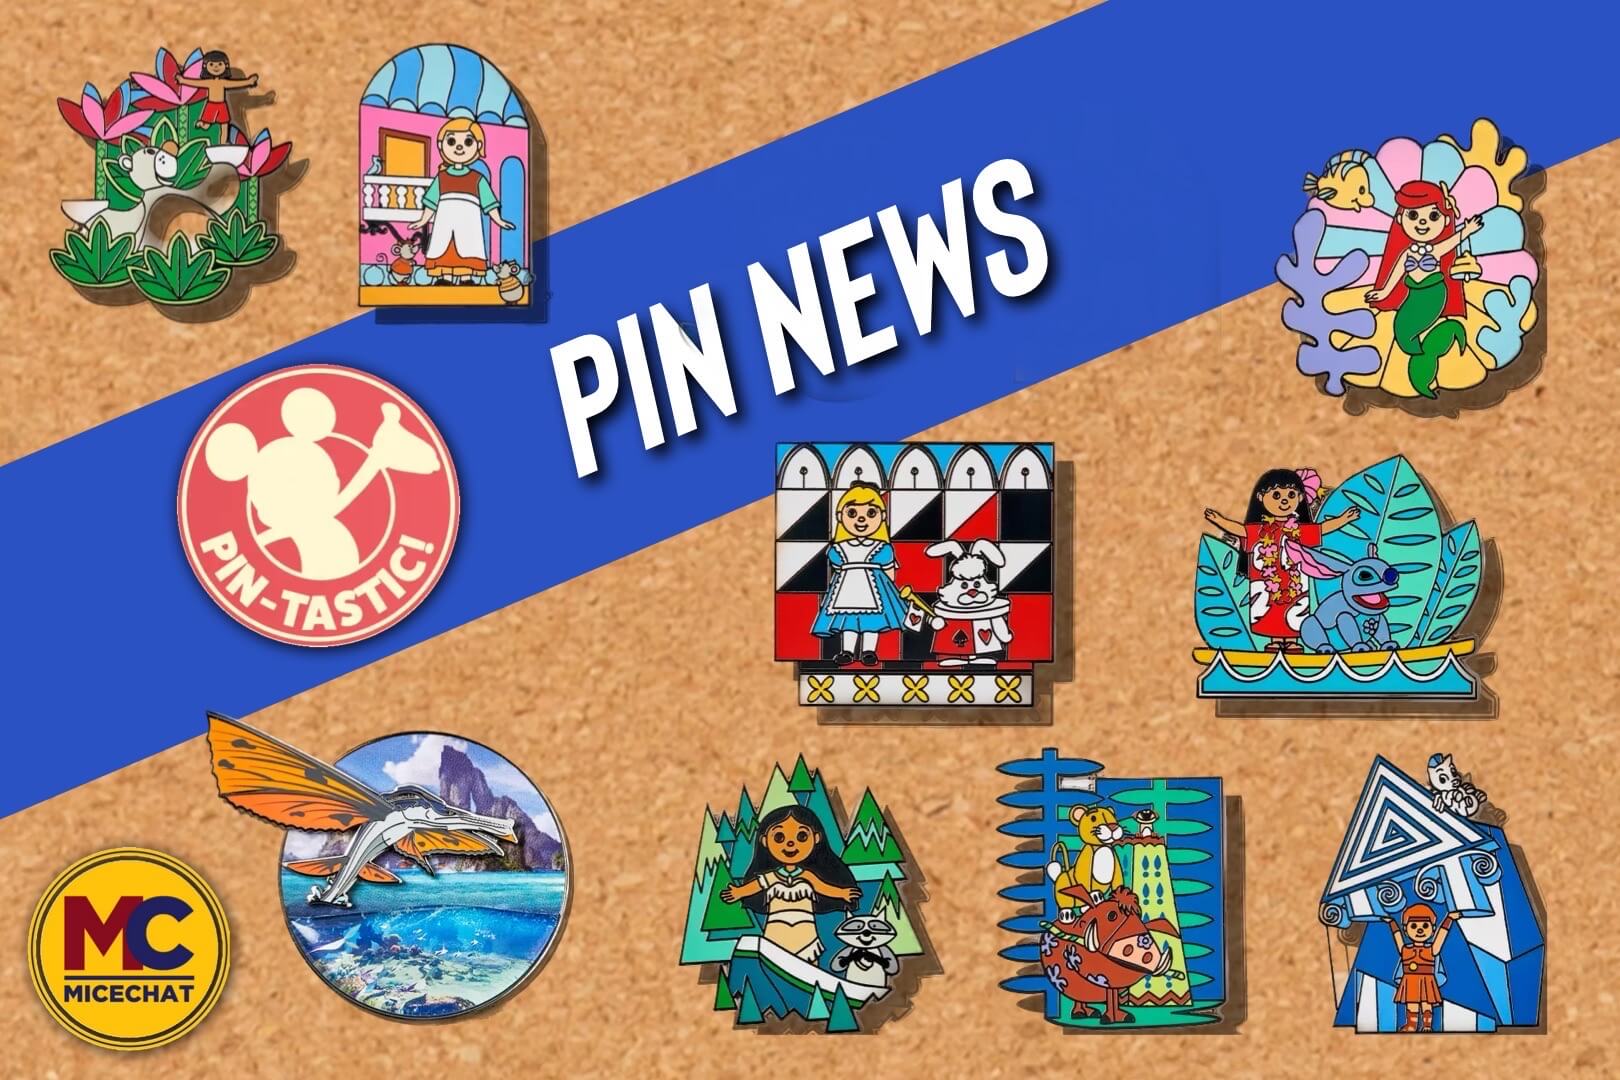 Collecting and Trading Disney Pins at Disney Resorts - Disney Pins